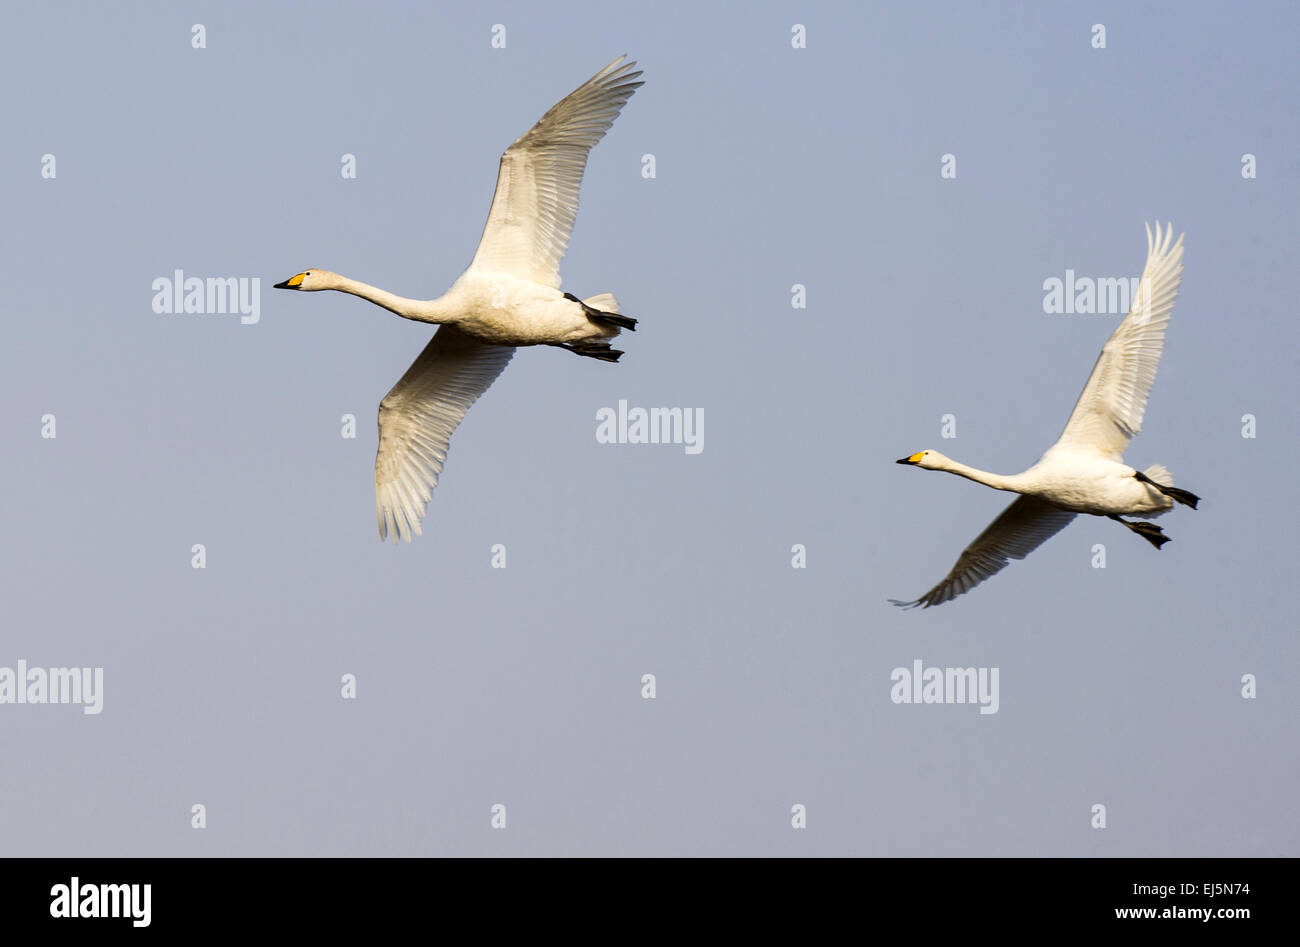 Par de flying Whoopers/cisnes en el cielo azul ligeramente llegando a aterrizar en dirección de derecha a izquierda Foto de stock